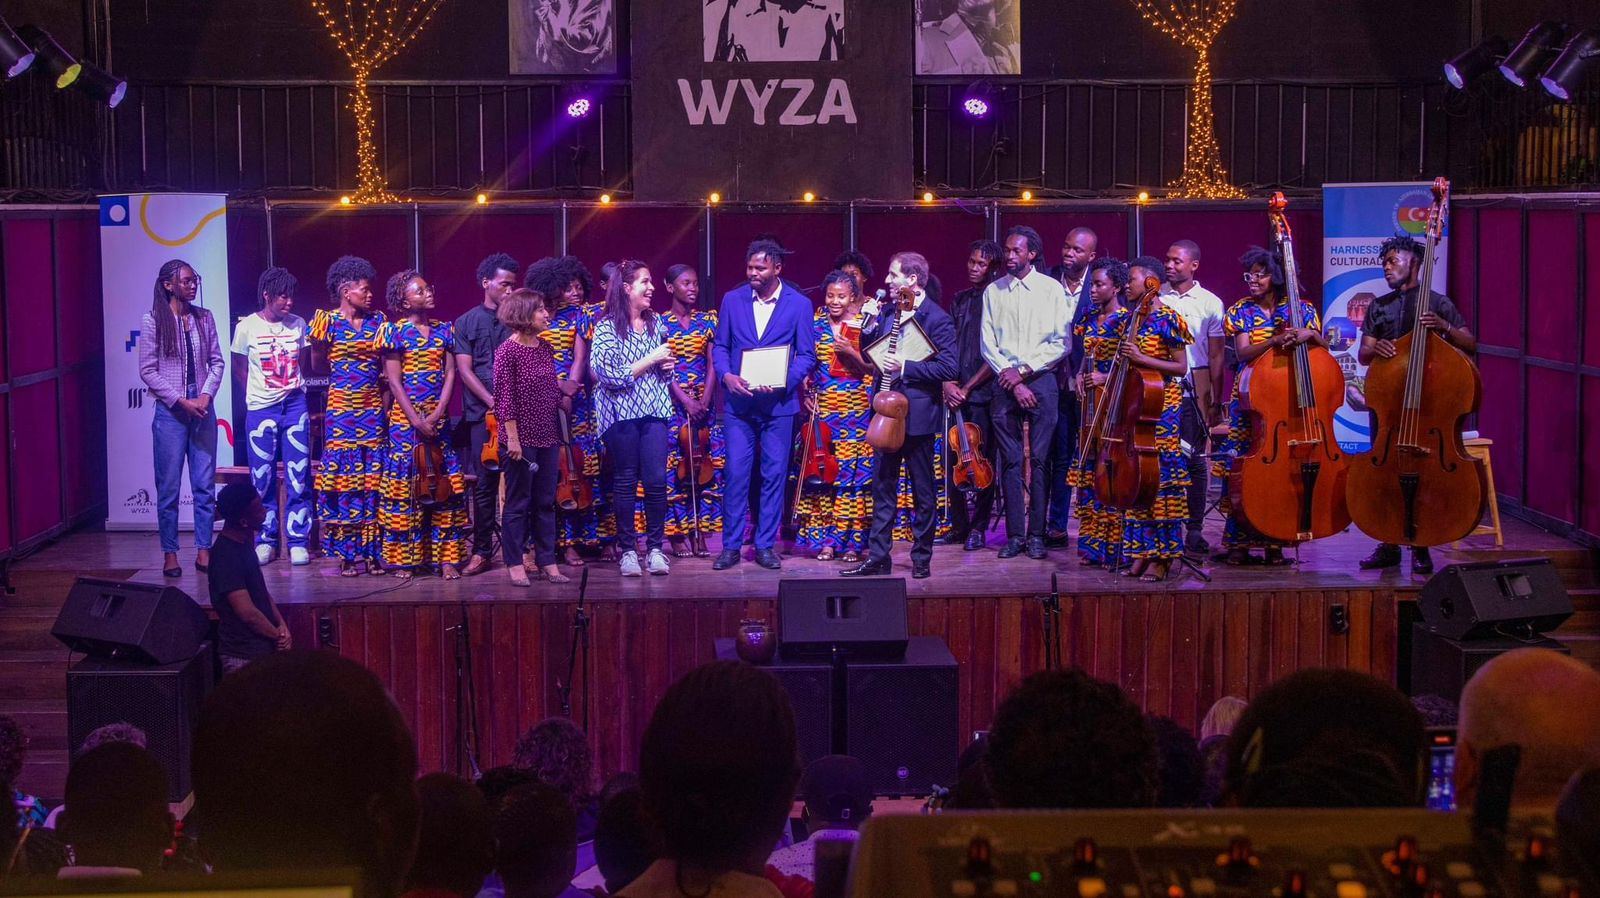 В Анголе прошел потрясающий концерт азербайджано-африканской дружбы (ВИДЕО, ФОТО)